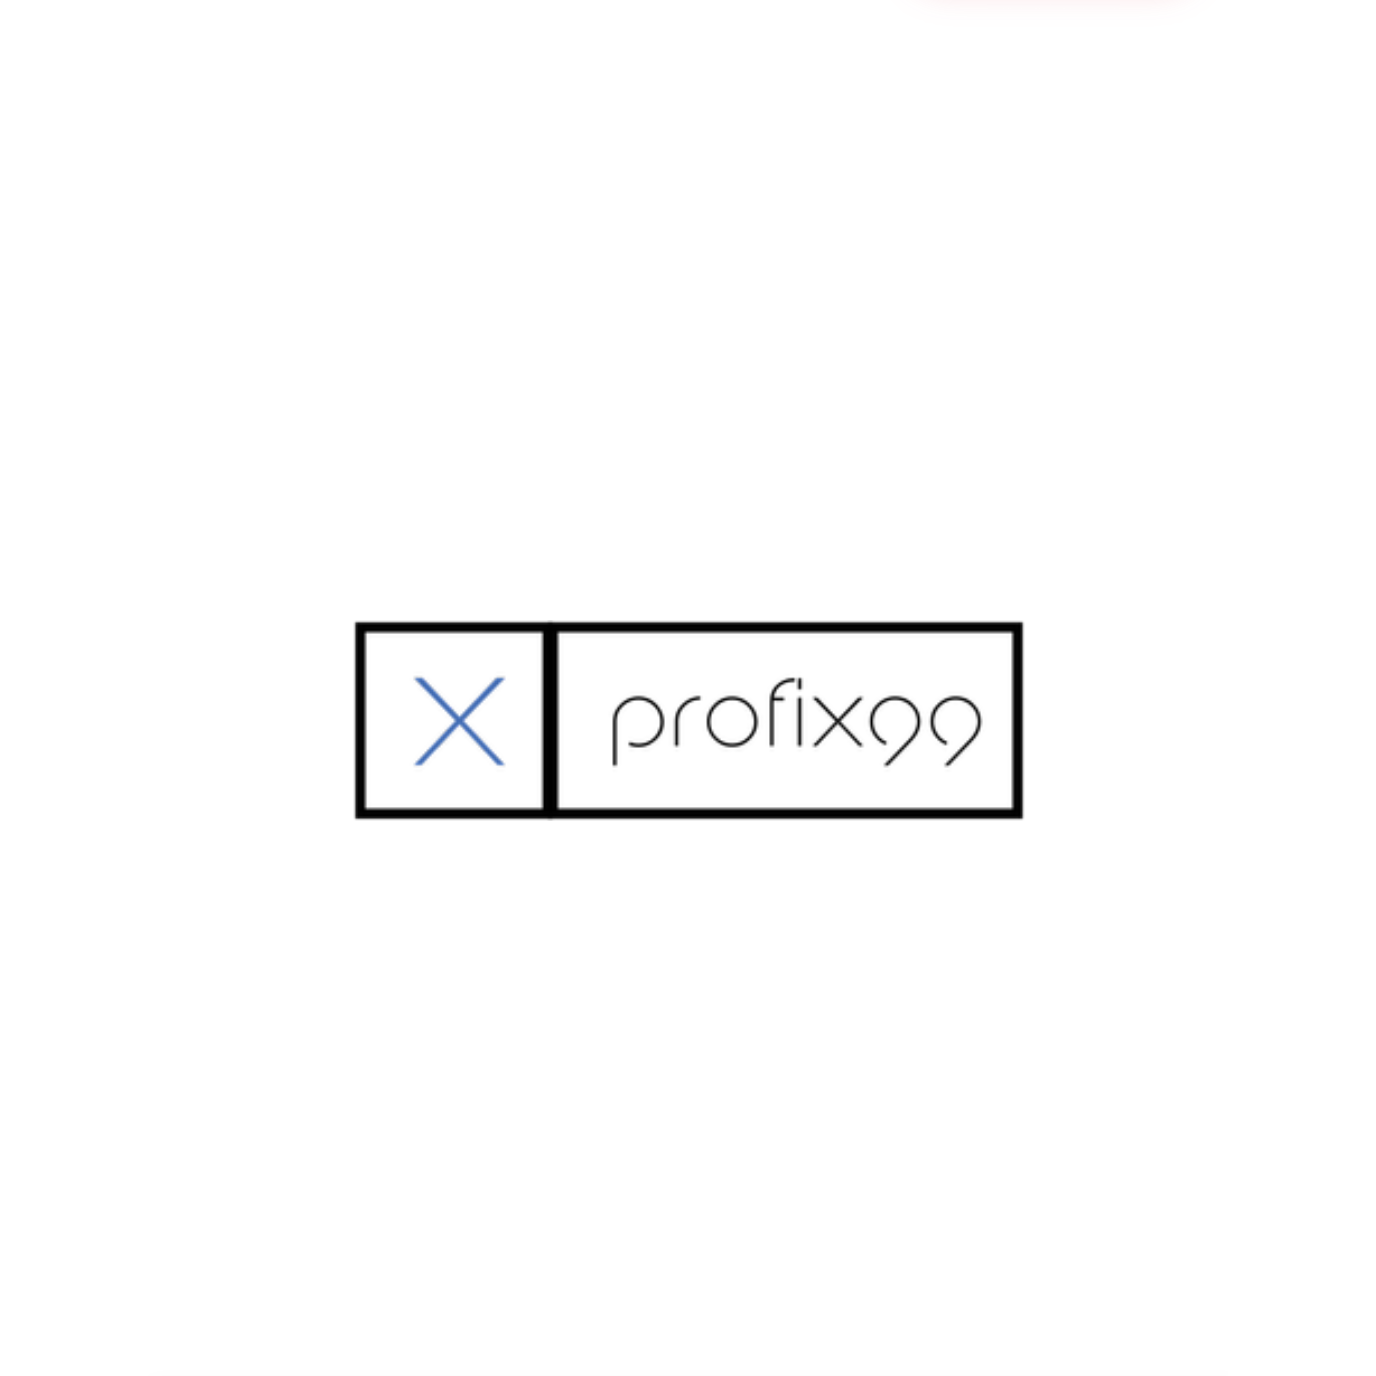 Profix99 Logo